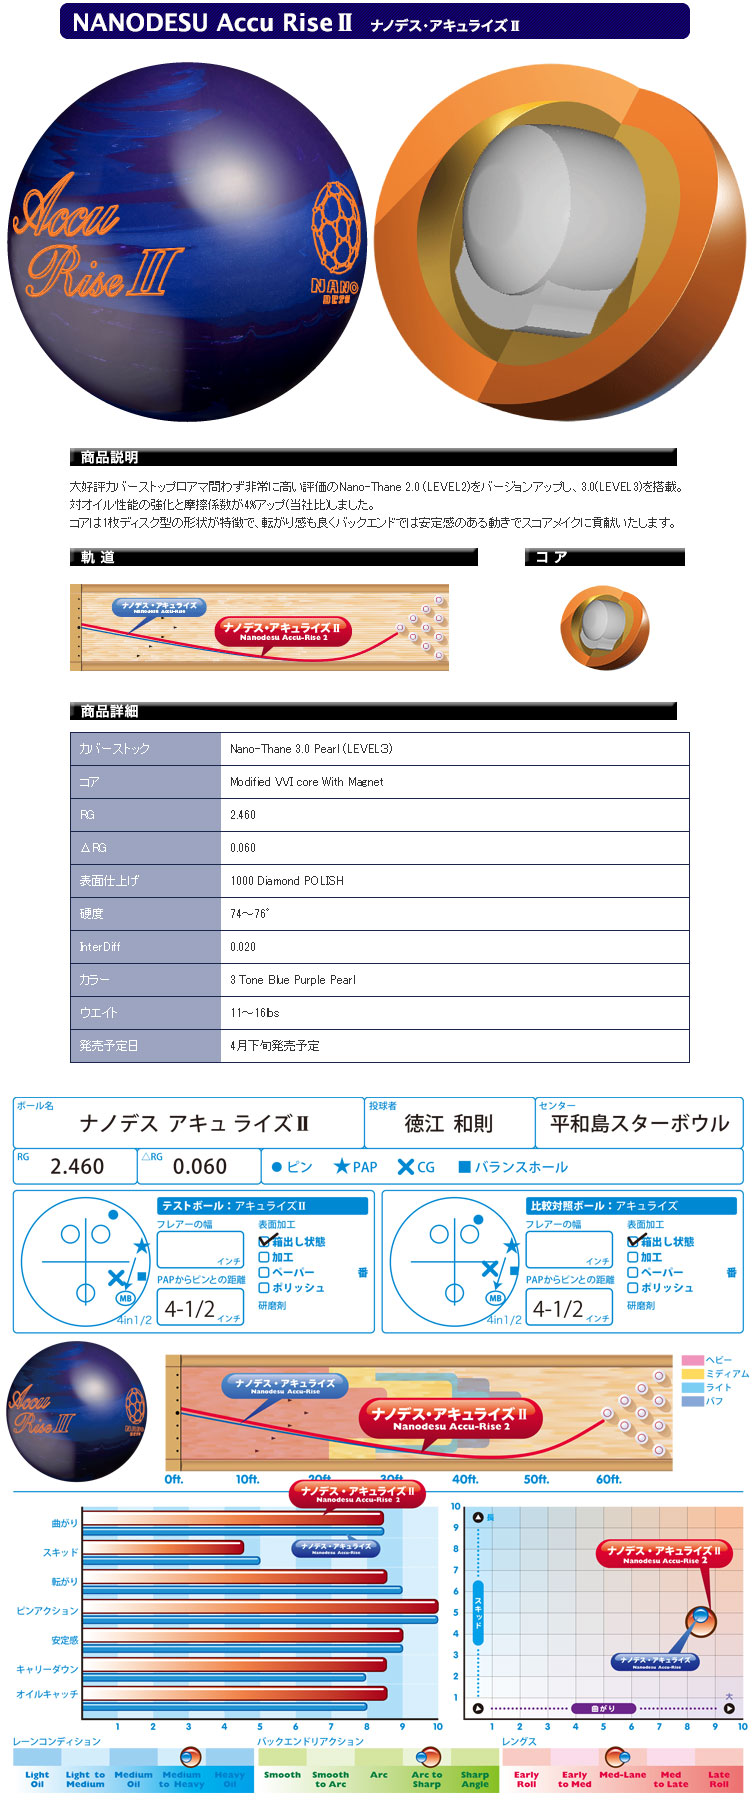 ボウリングボール ABS】ナノデス アキュライズ2 NANODESU Accu Rise 2 ボール フタバプロショップオンライン